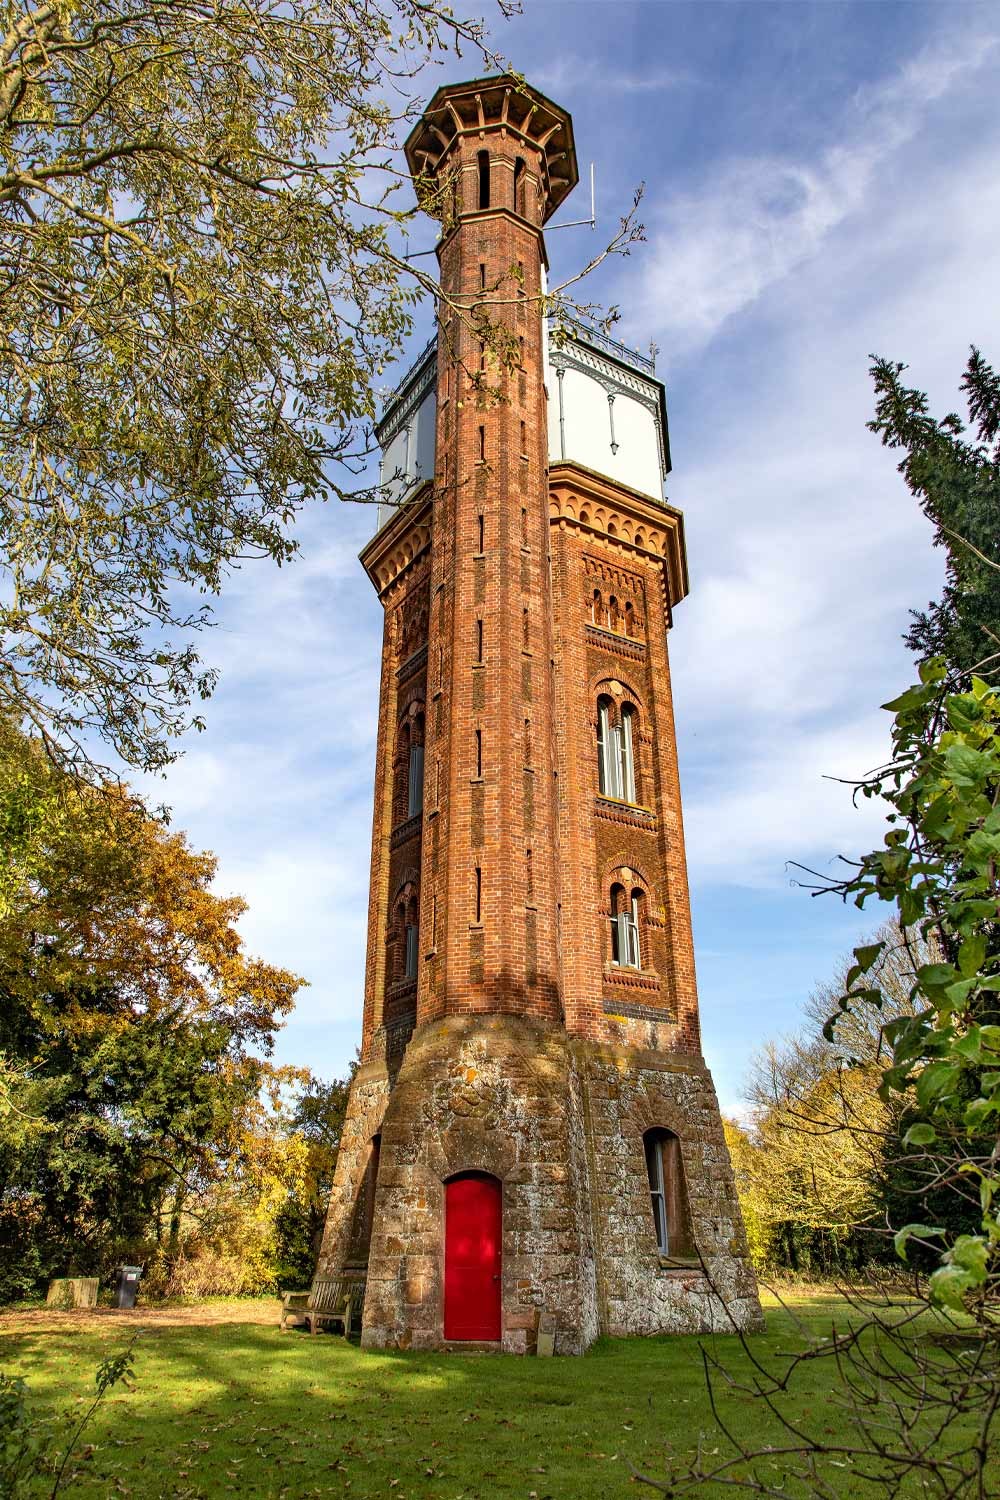 Appleton Water Tower